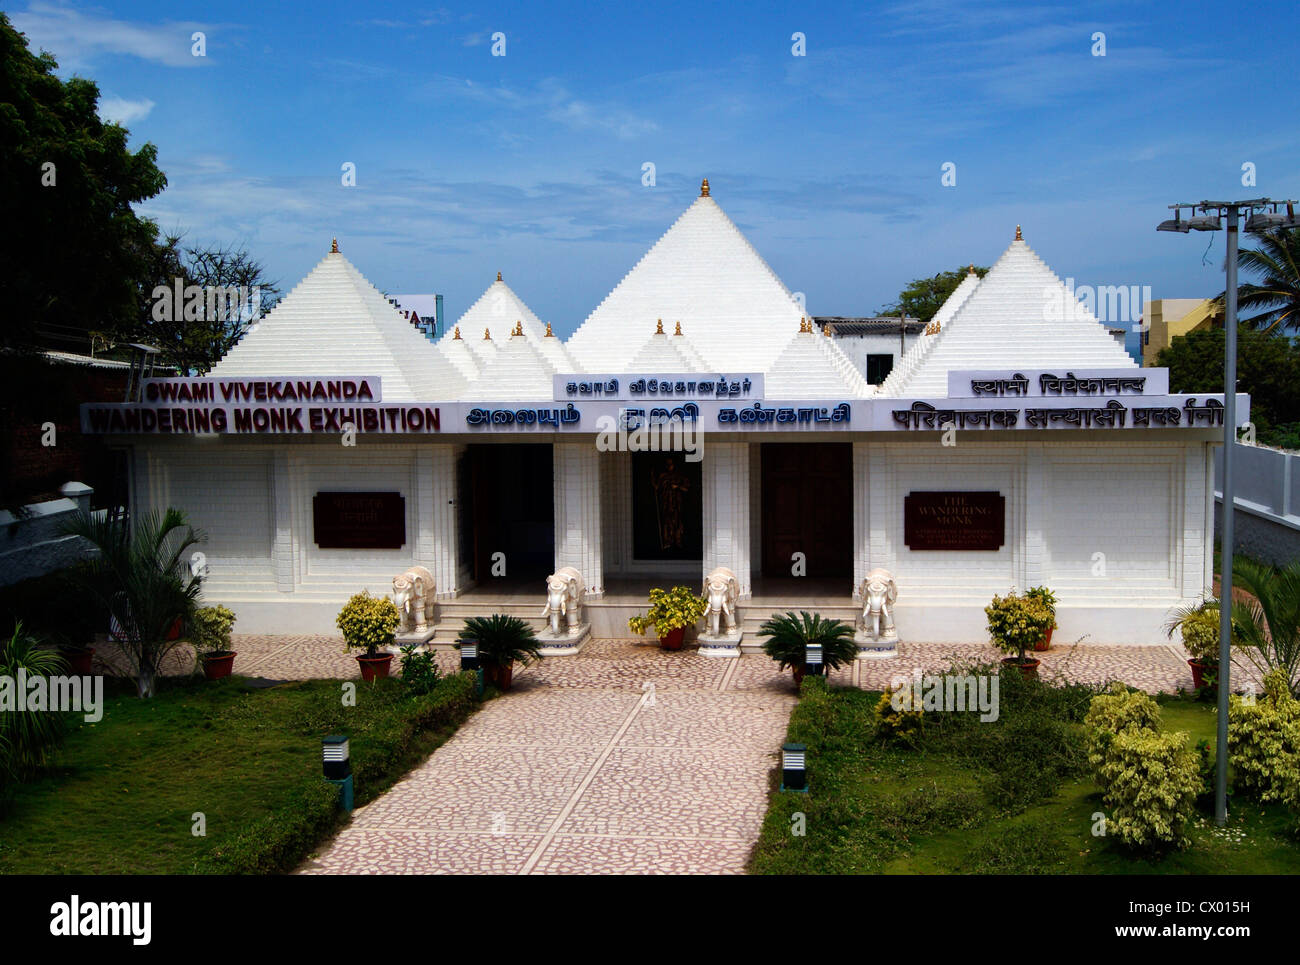 Moine vagabond Museum Building (Swami Vivekananda Moine Vagabond musées Exposition) à Kanyakumari au Tamil Nadu, Inde Banque D'Images